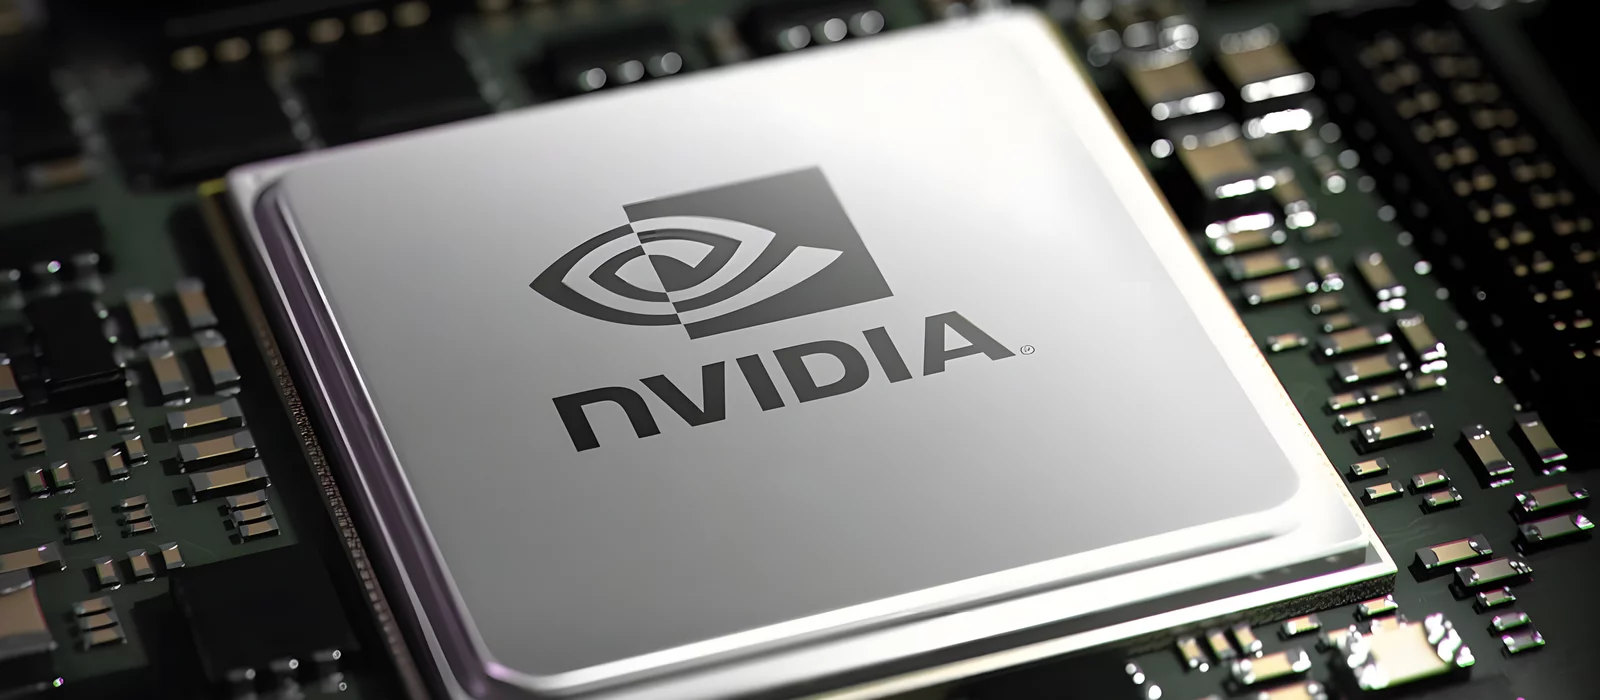 
          NVIDIA представила очень производительный графический процессор, который называют самым мощным в мире. Но он не для игр
        